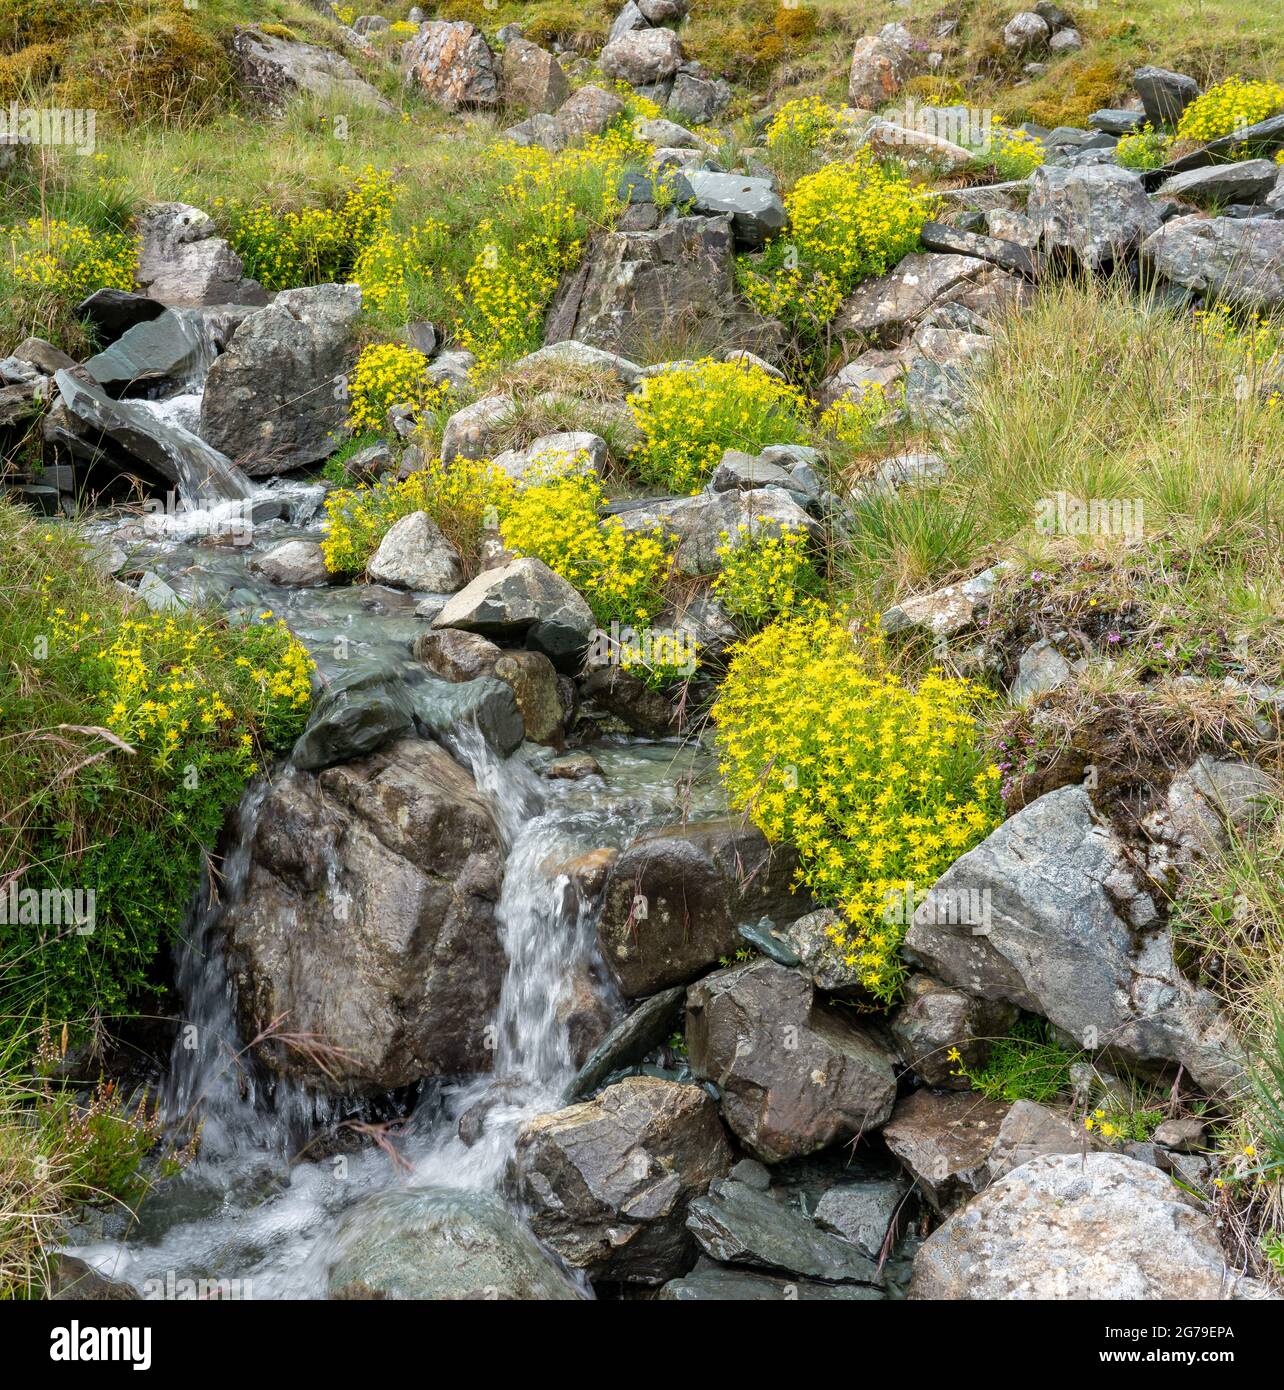 Saxifrage jaune Saxifraga aizoides croissant par un ruisseau de montagne à Honister dans le district anglais des lacs au Royaume-Uni Banque D'Images